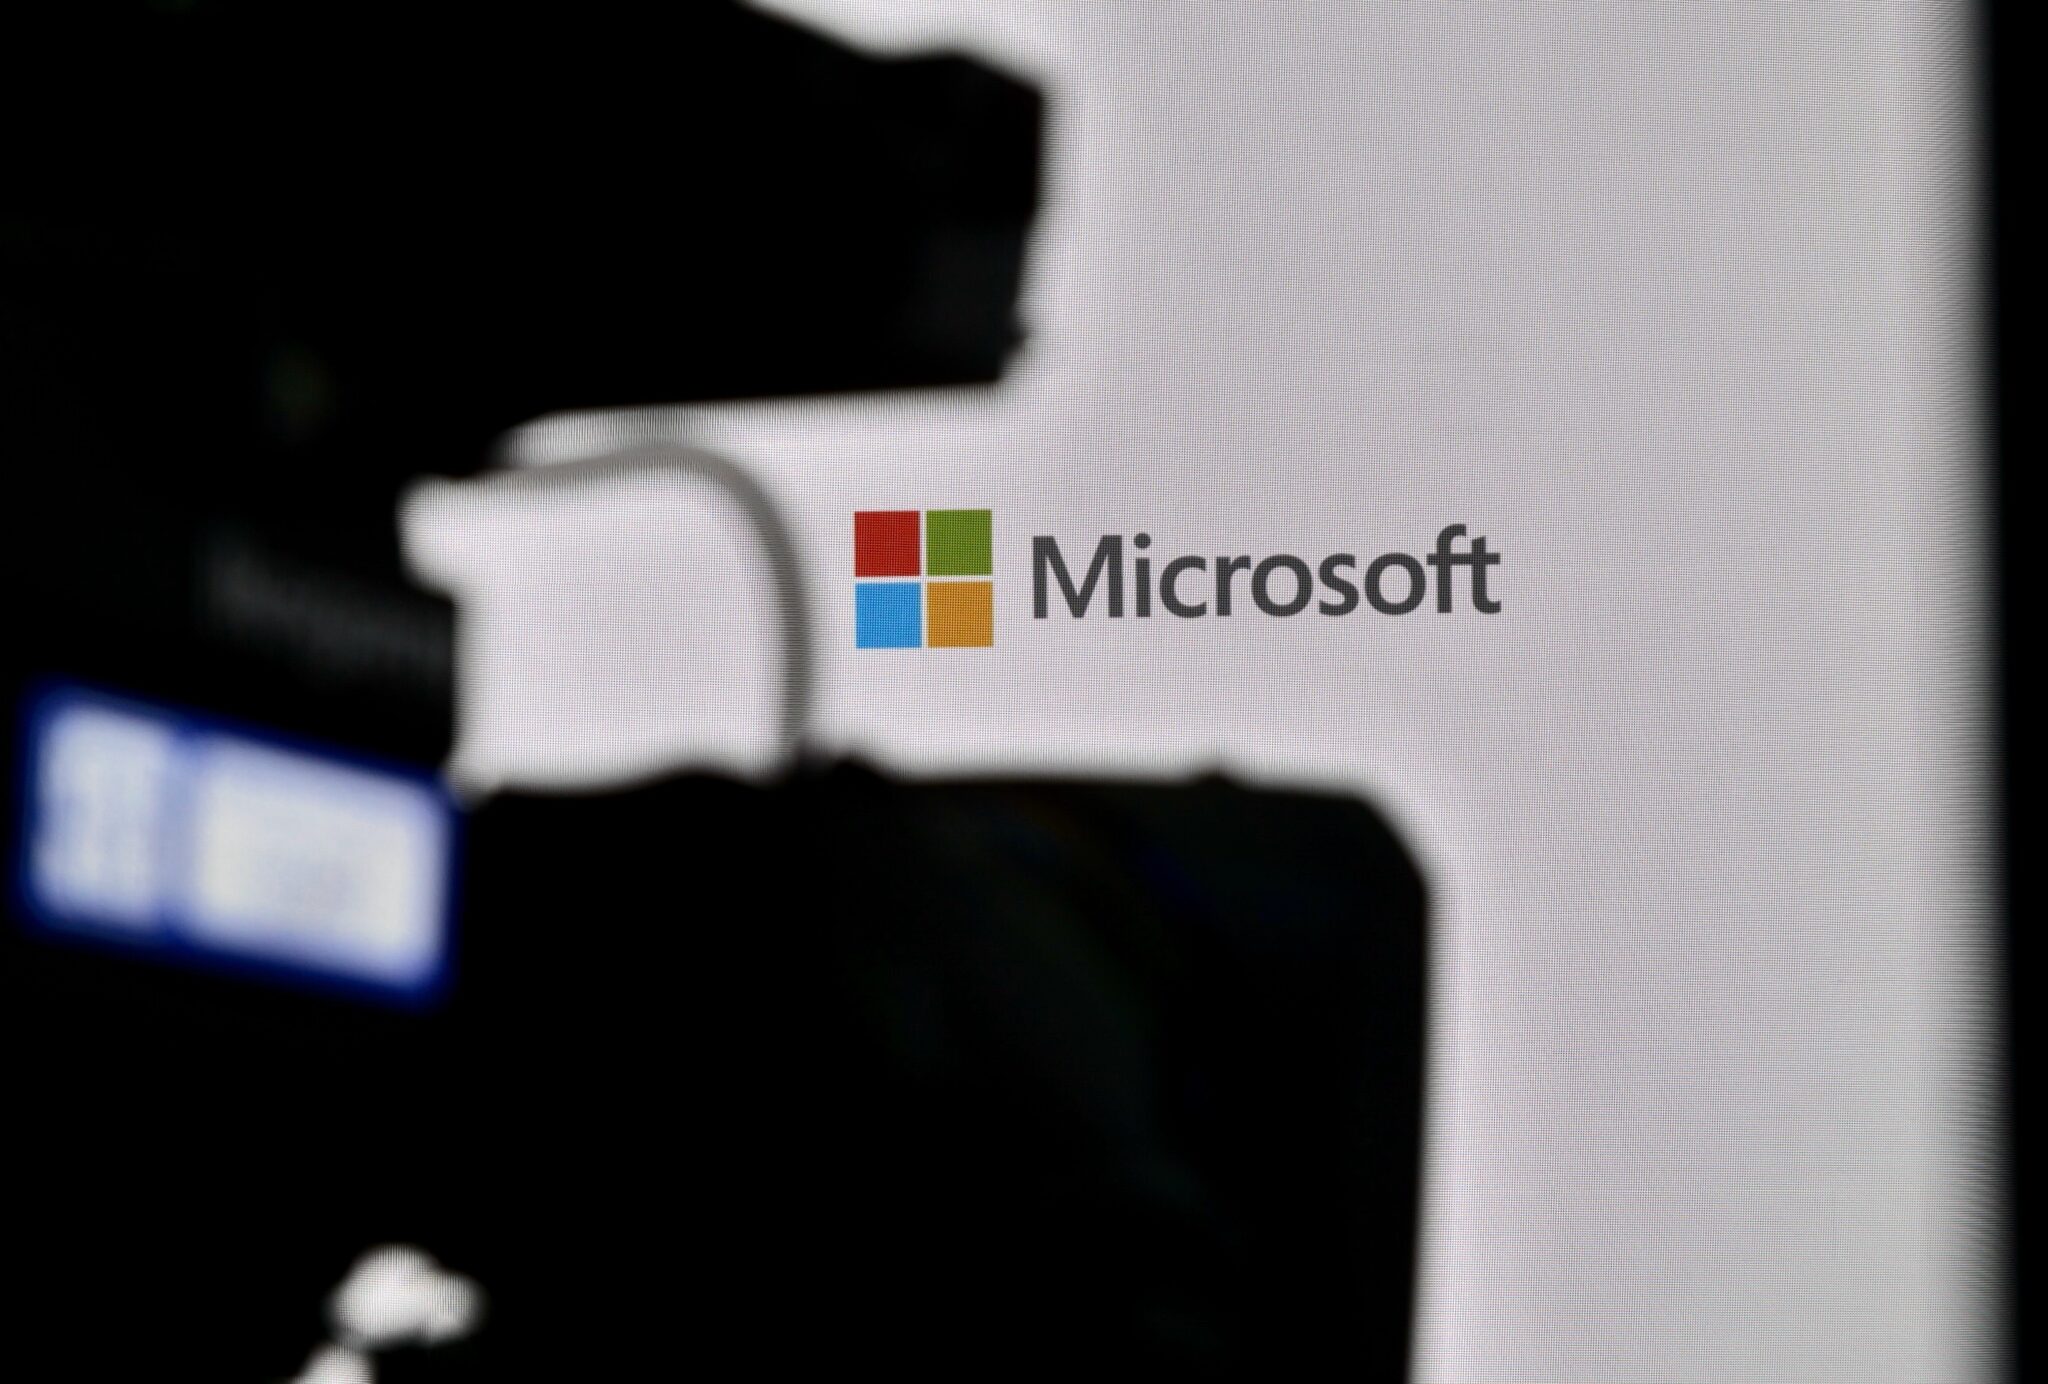 Microsoft a tenté de faire taire la vulnérabilité dans DALL-E, a déclaré un responsable de l'entreprise.